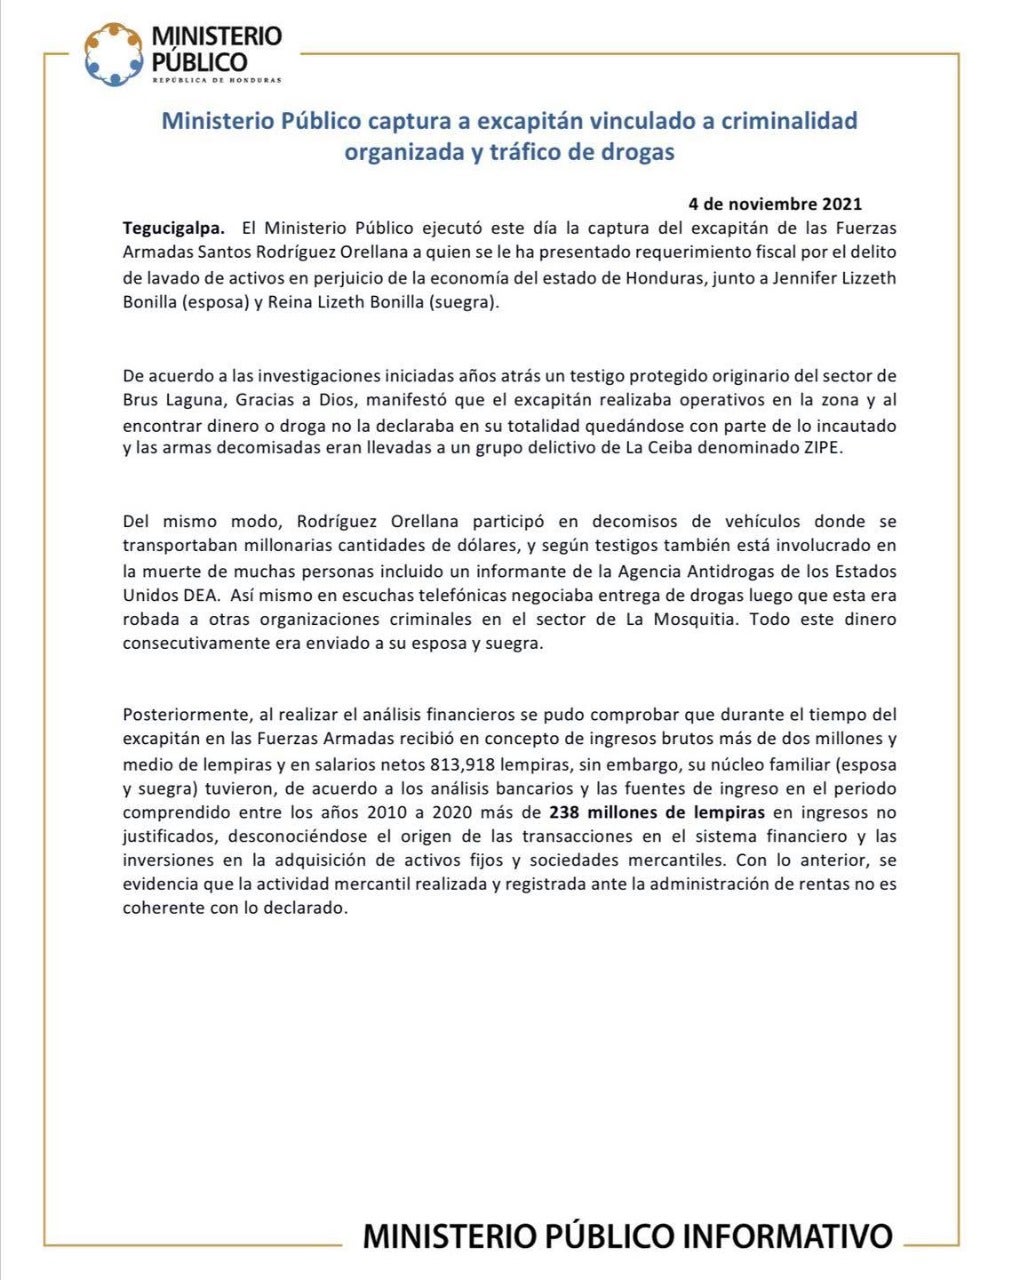 Comunicado del Ministerio Público sobre la detención de Santos Orellana.